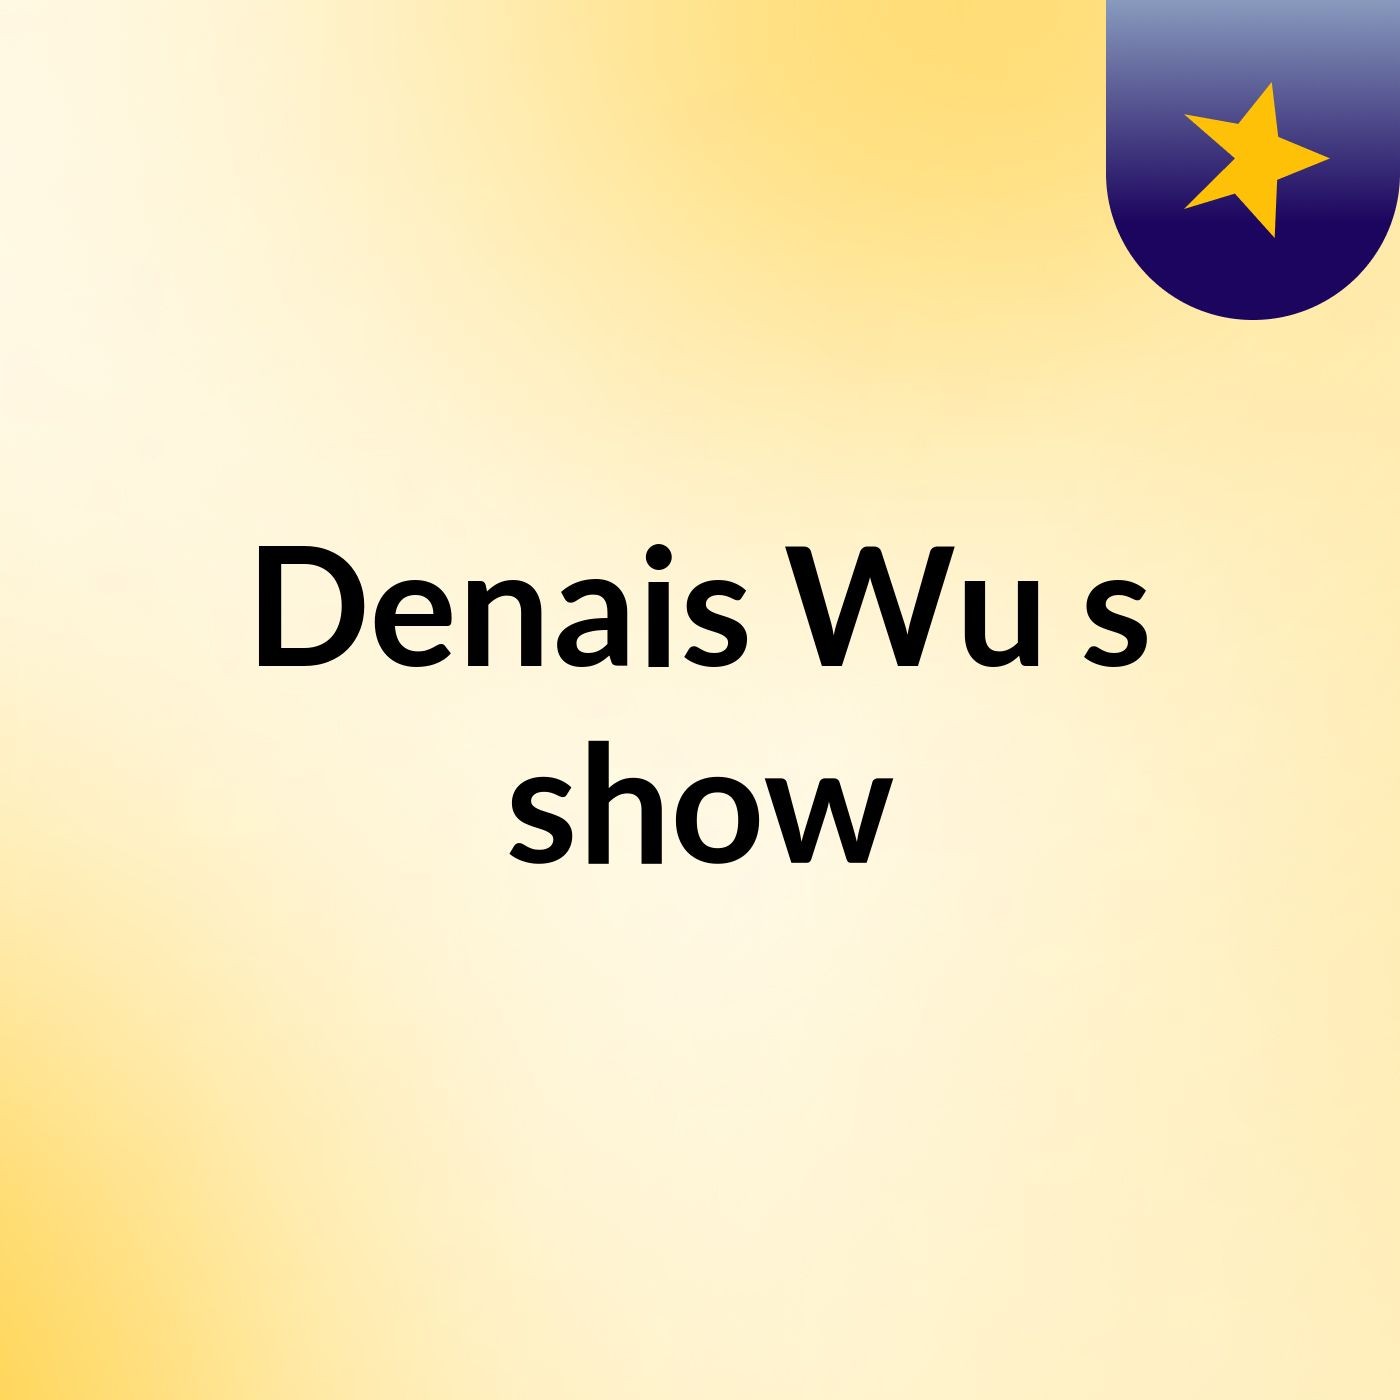 Denais Wu's show